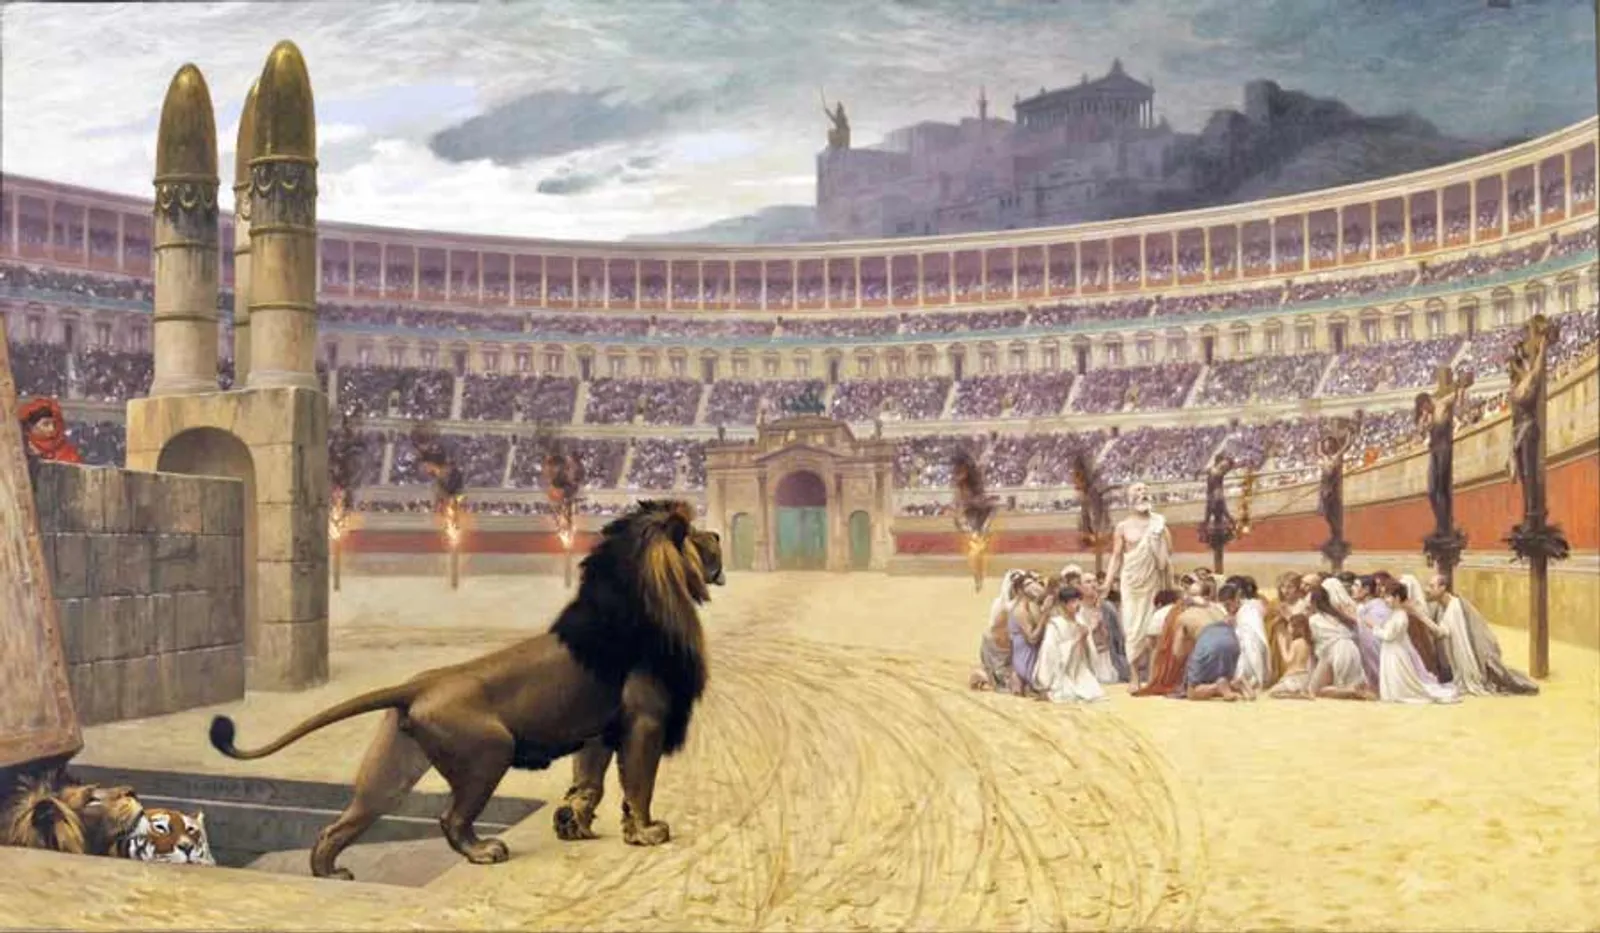 7 Eksekusi Kematian di Masa Kekaisaran Romawi selain Penyaliban, Ngeri